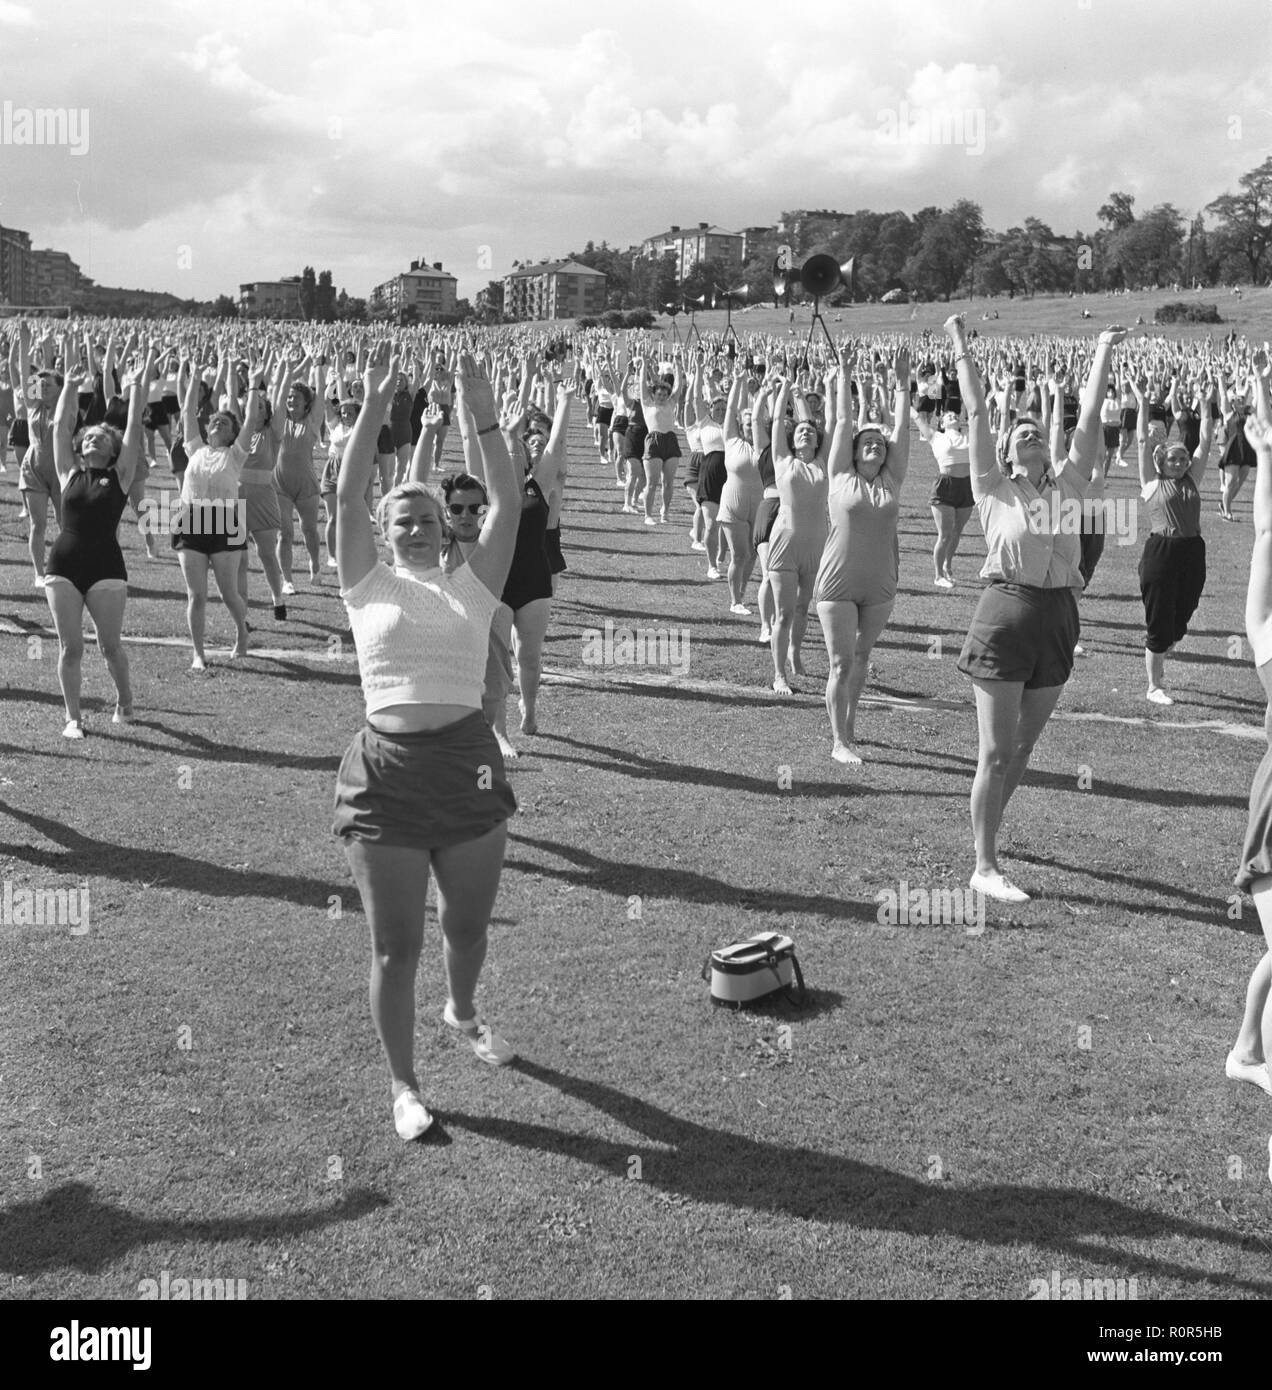 Gymnastik in den 1950er Jahren. Die beliebten Frauen Hausfrau Gymnastik wird überall praktiziert. Hier eine große Anzahl von Frauen zusammen trainieren im Freien. Schweden Juni 1954 Stockfoto